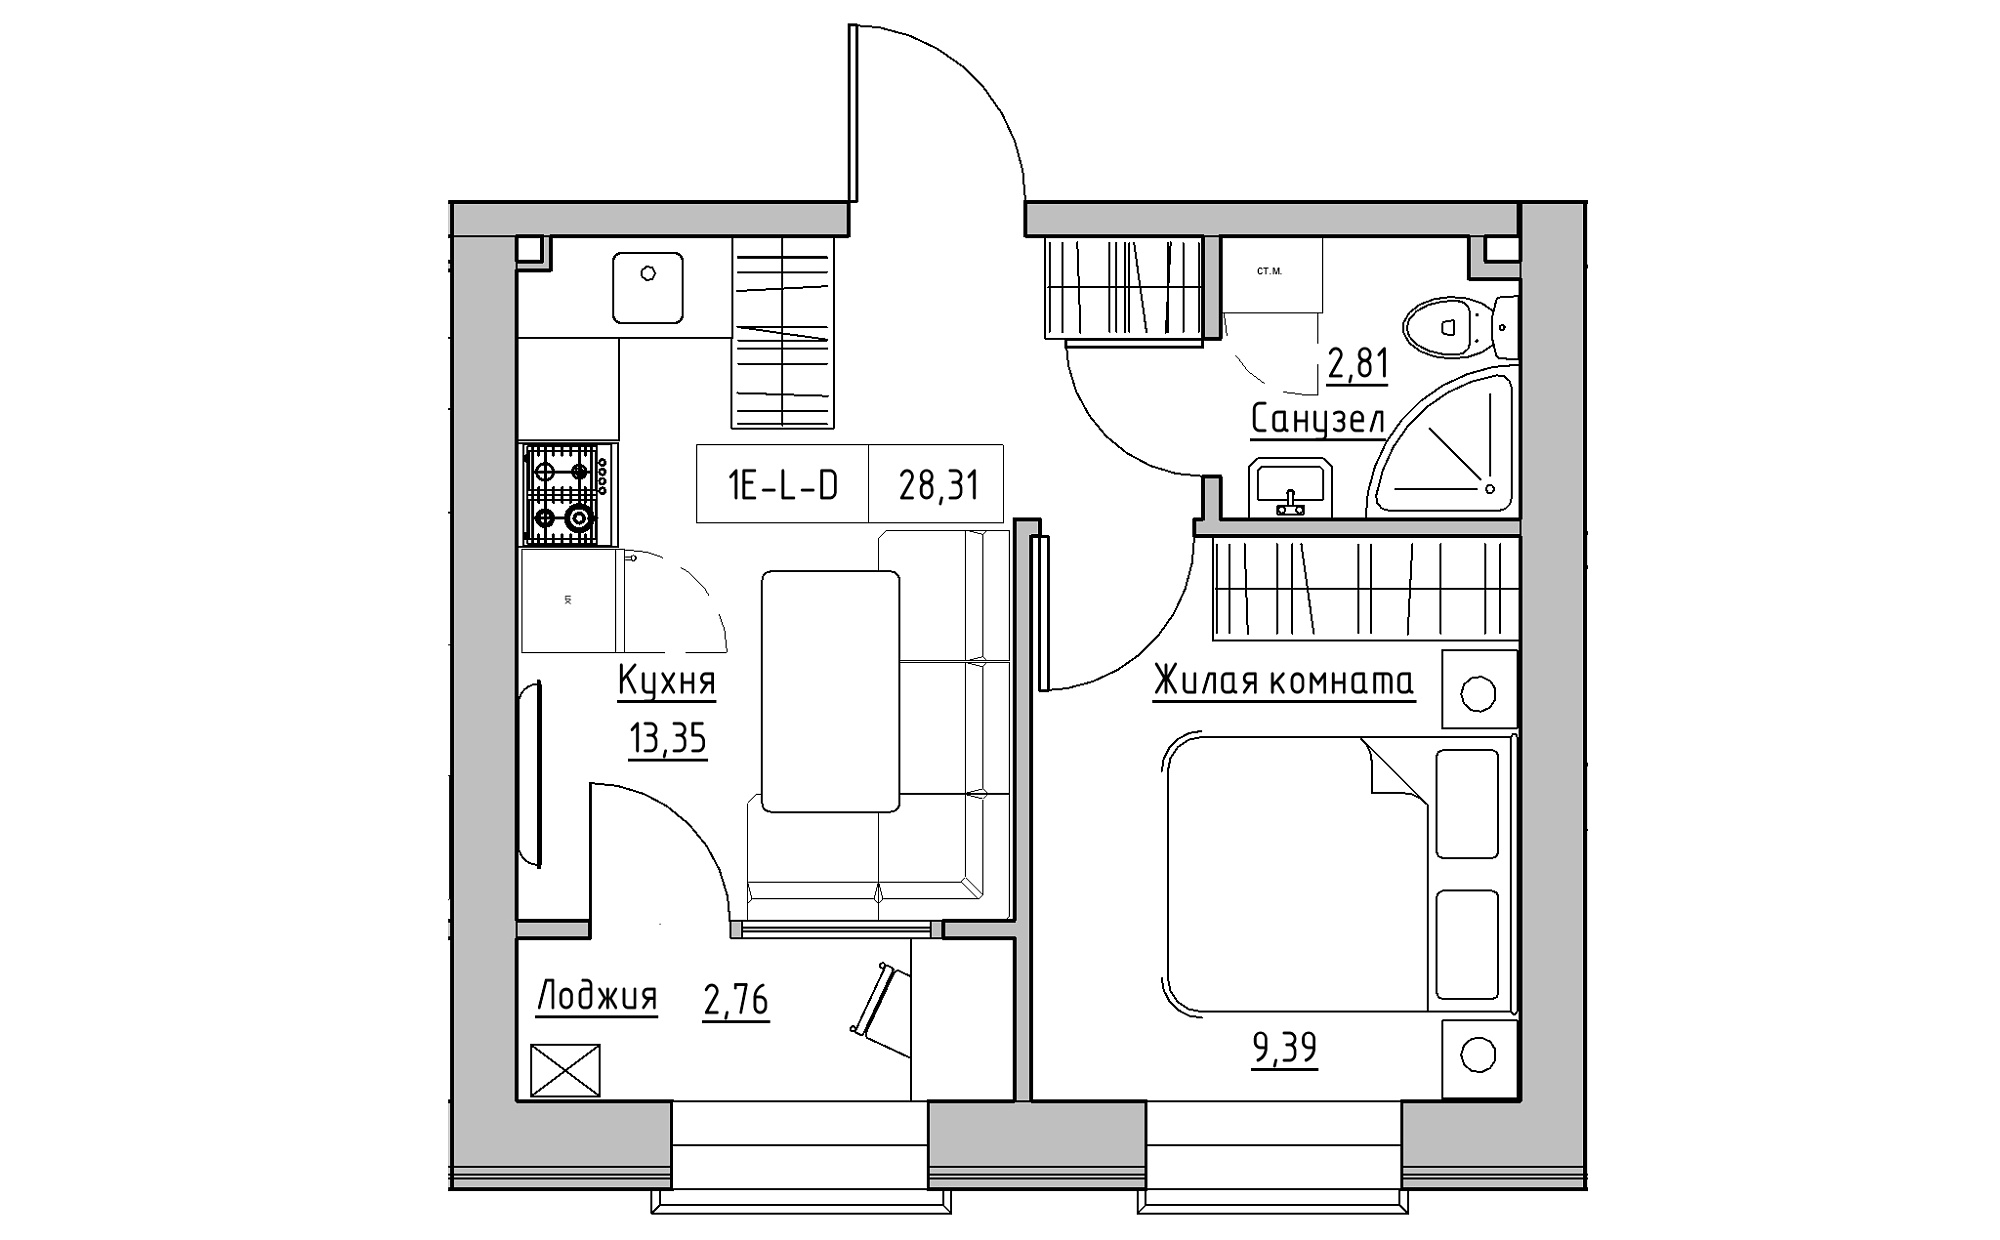 Планування 1-к квартира площею 28.31м2, KS-022-04/0001.